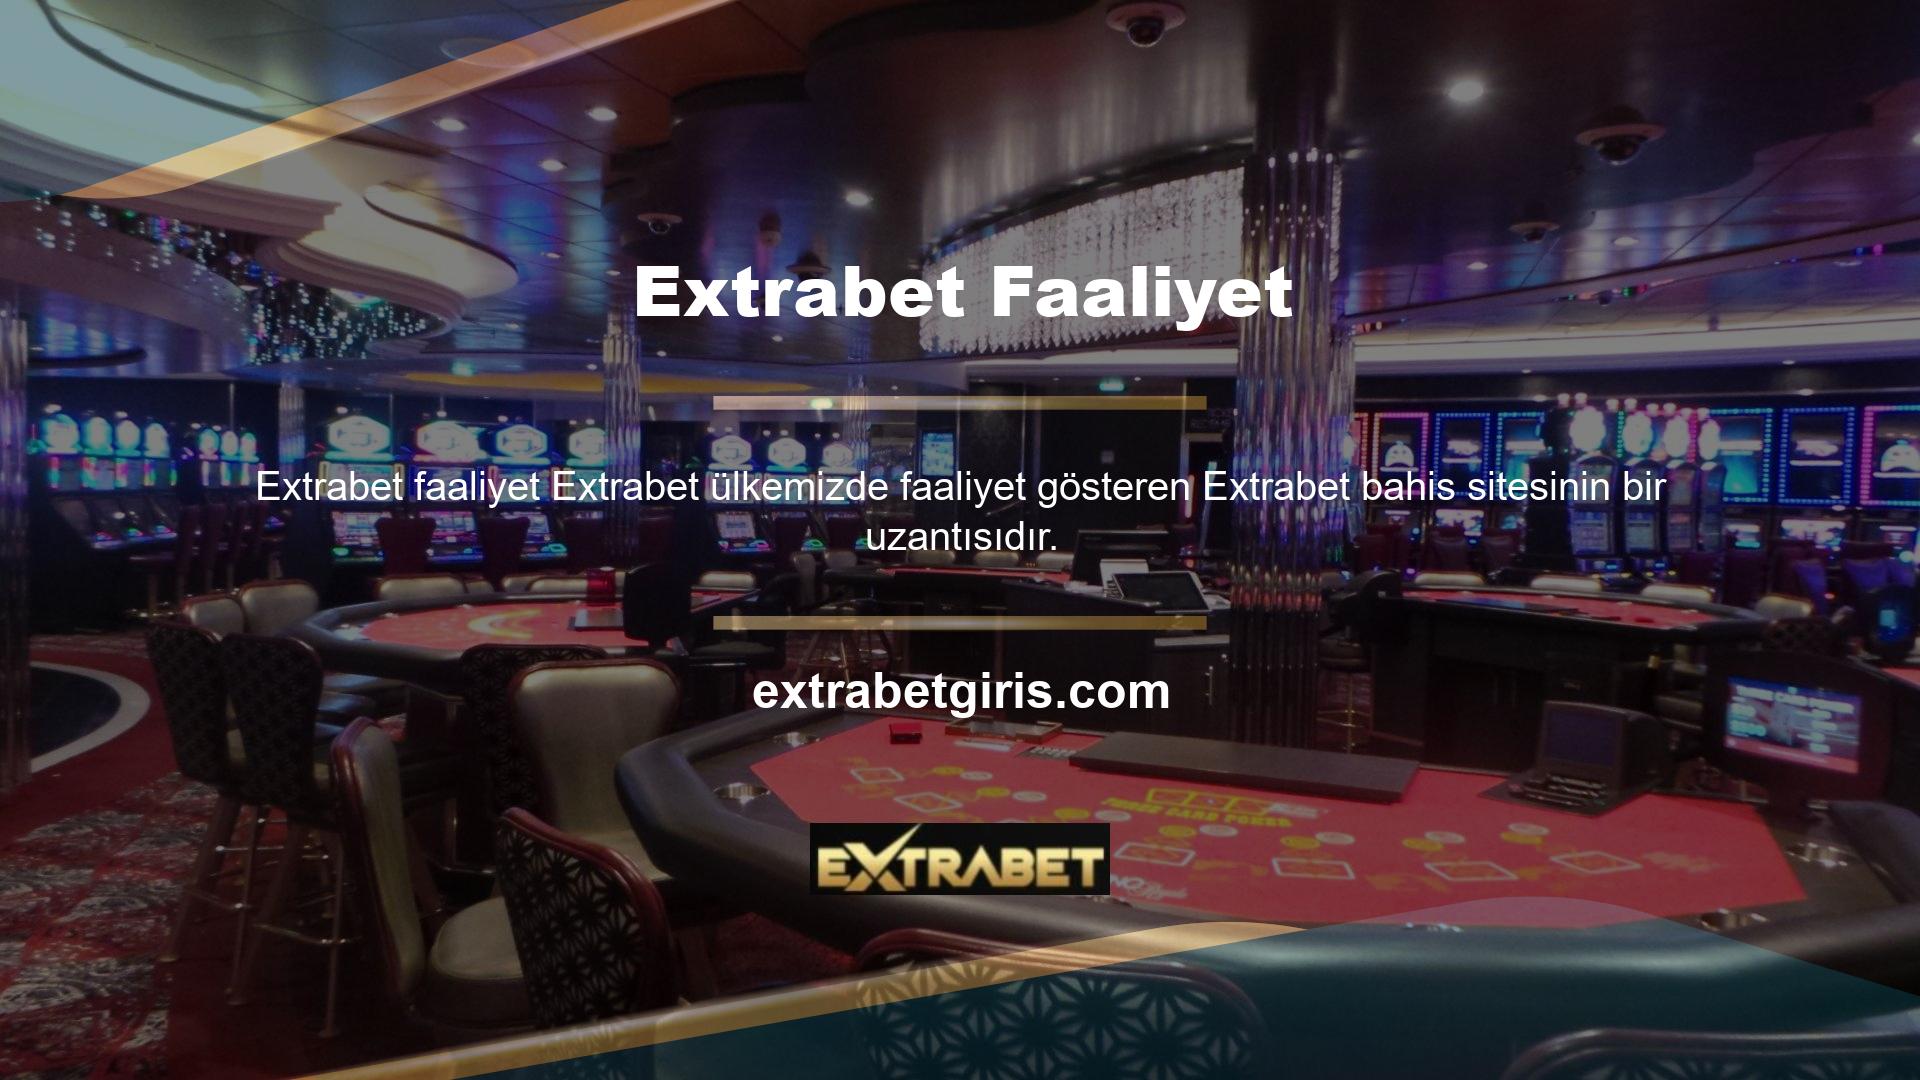 Extrabet casino şirketinin de benzer yabancı casino operatörleriyle anlaşmaları vardır